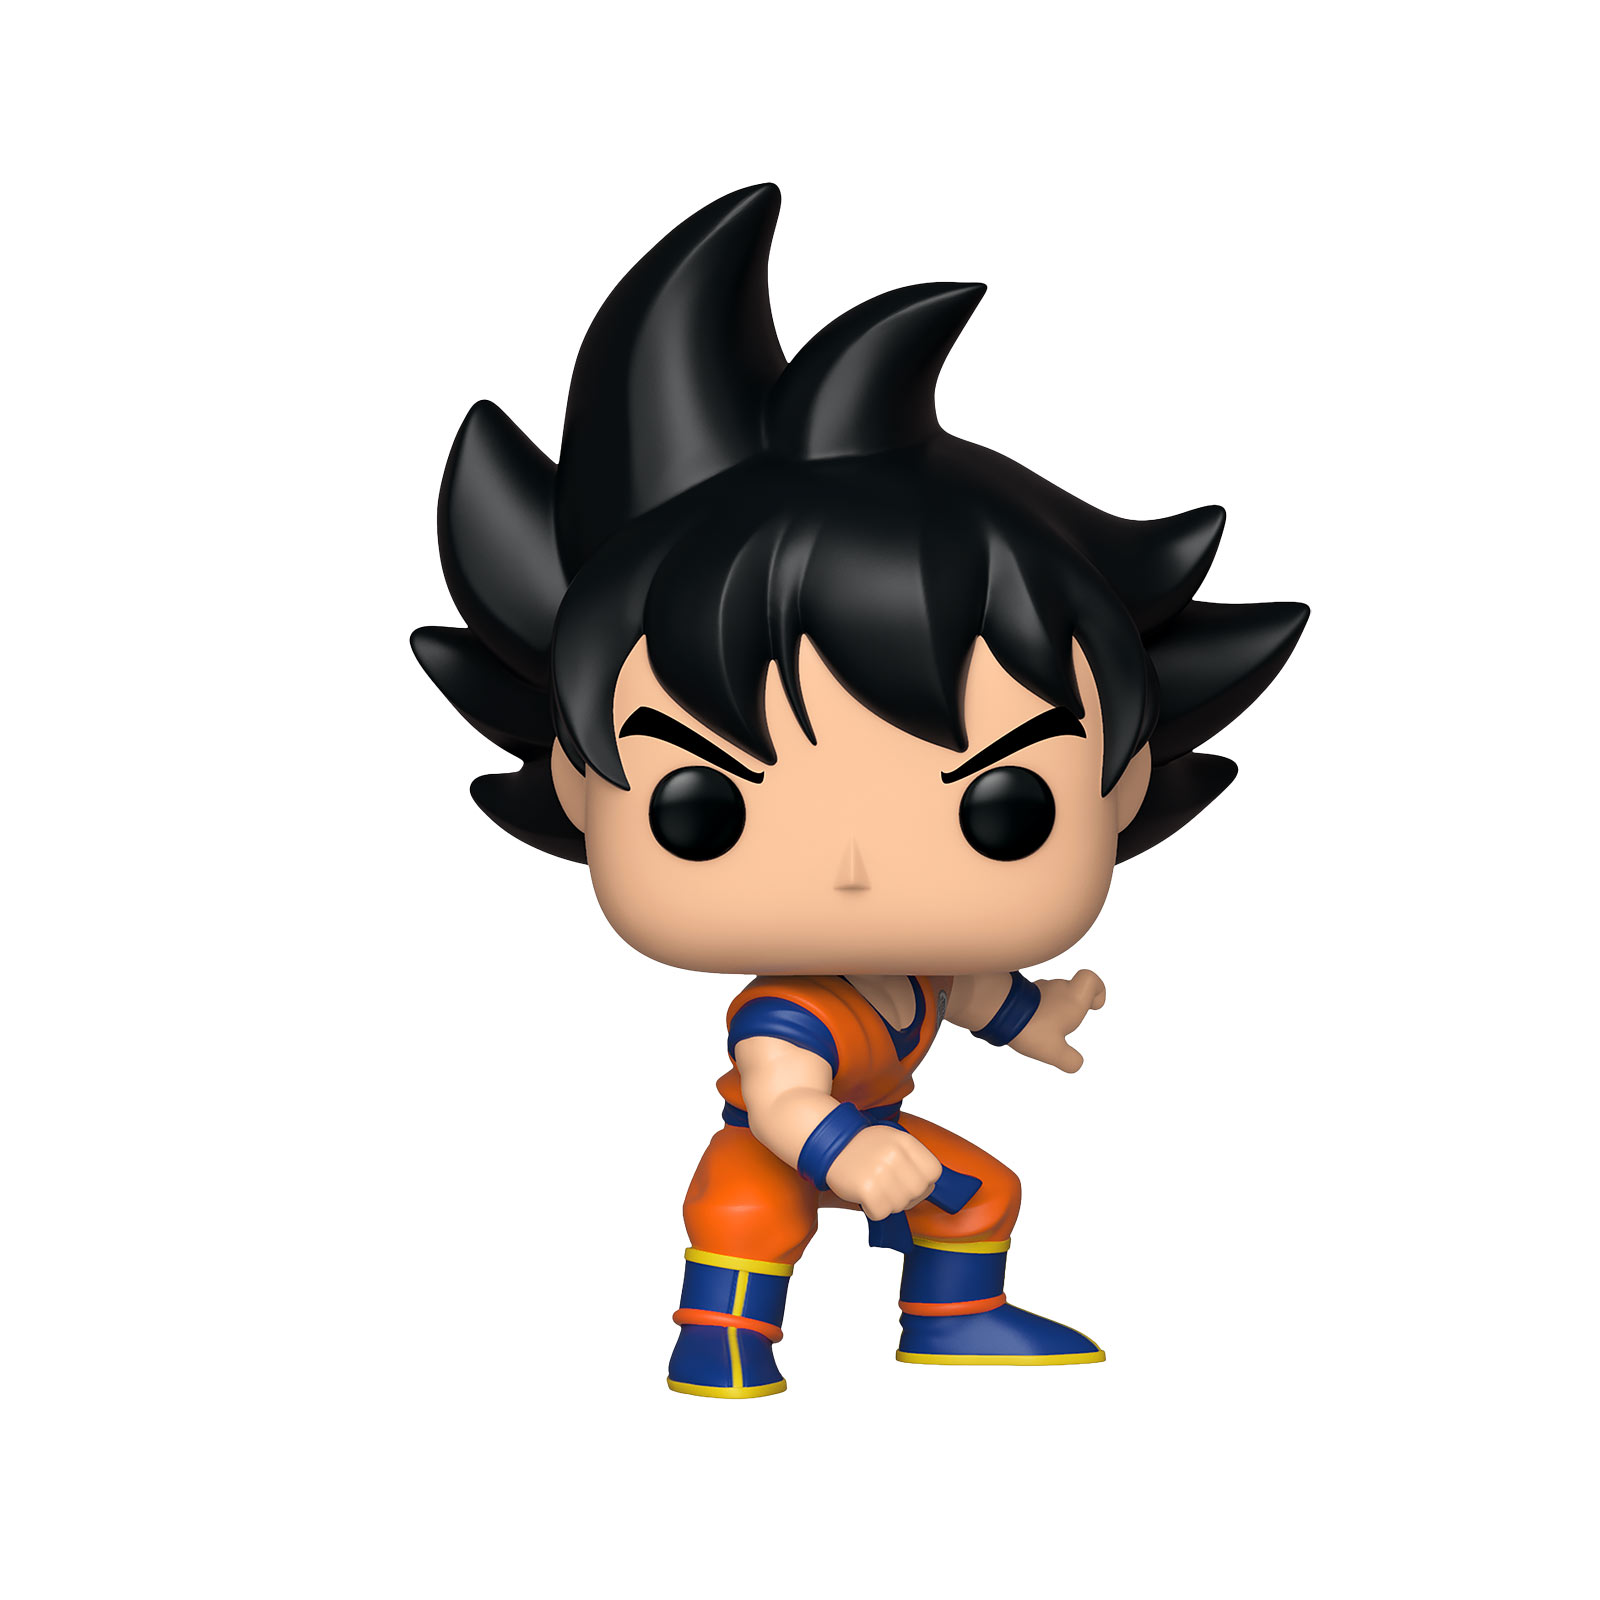 Dragon Ball Z - Goku in battle suit Funko Pop figure